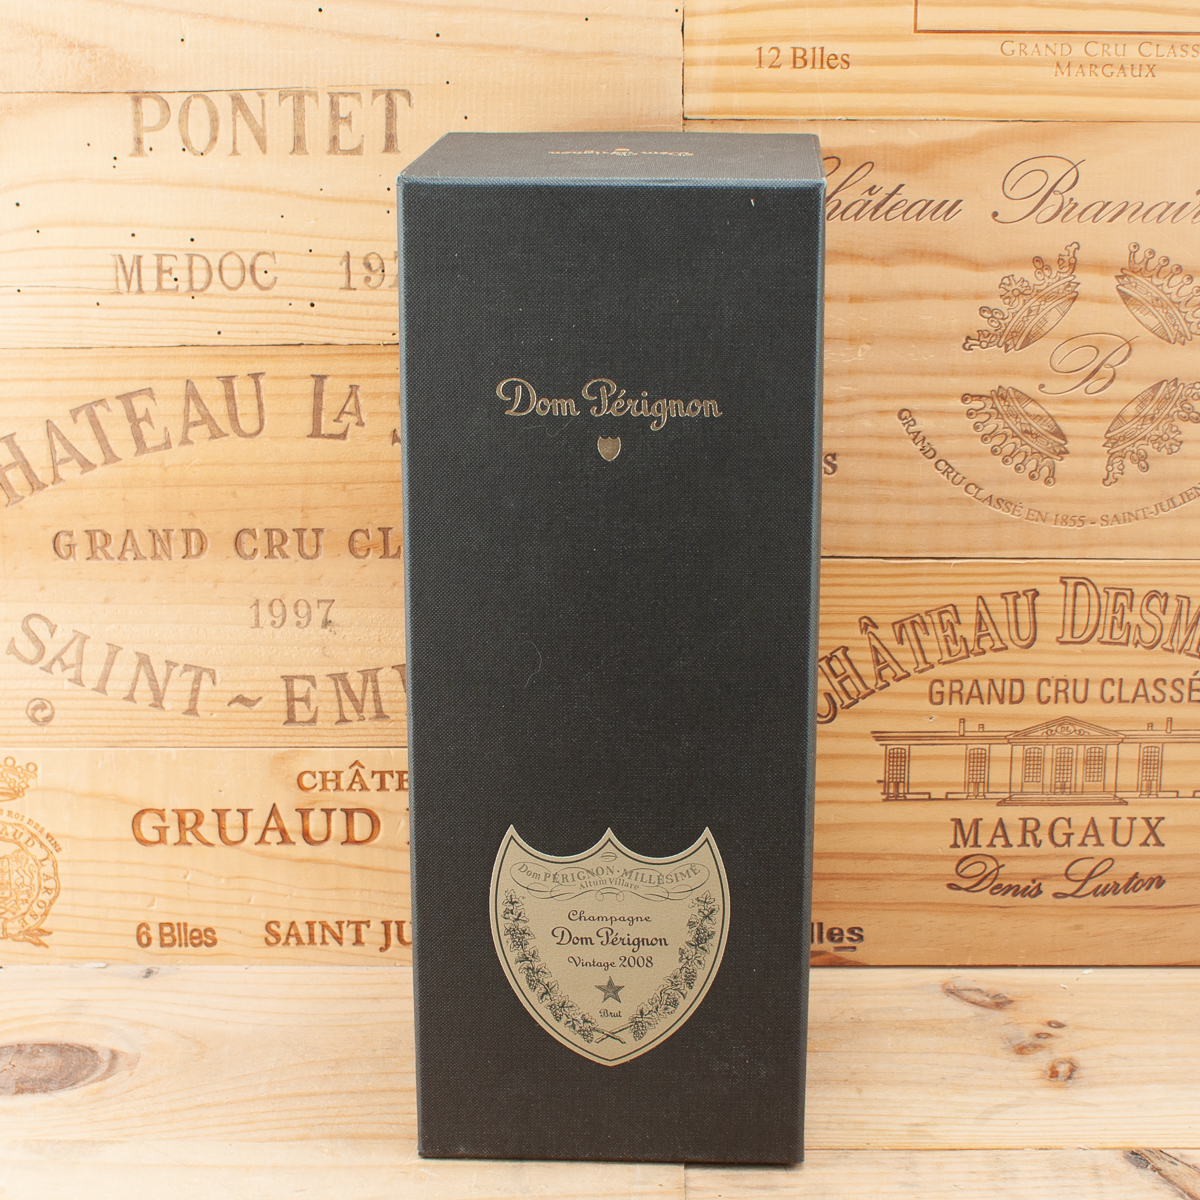 2008 Champagne Dom Perignon Vintage